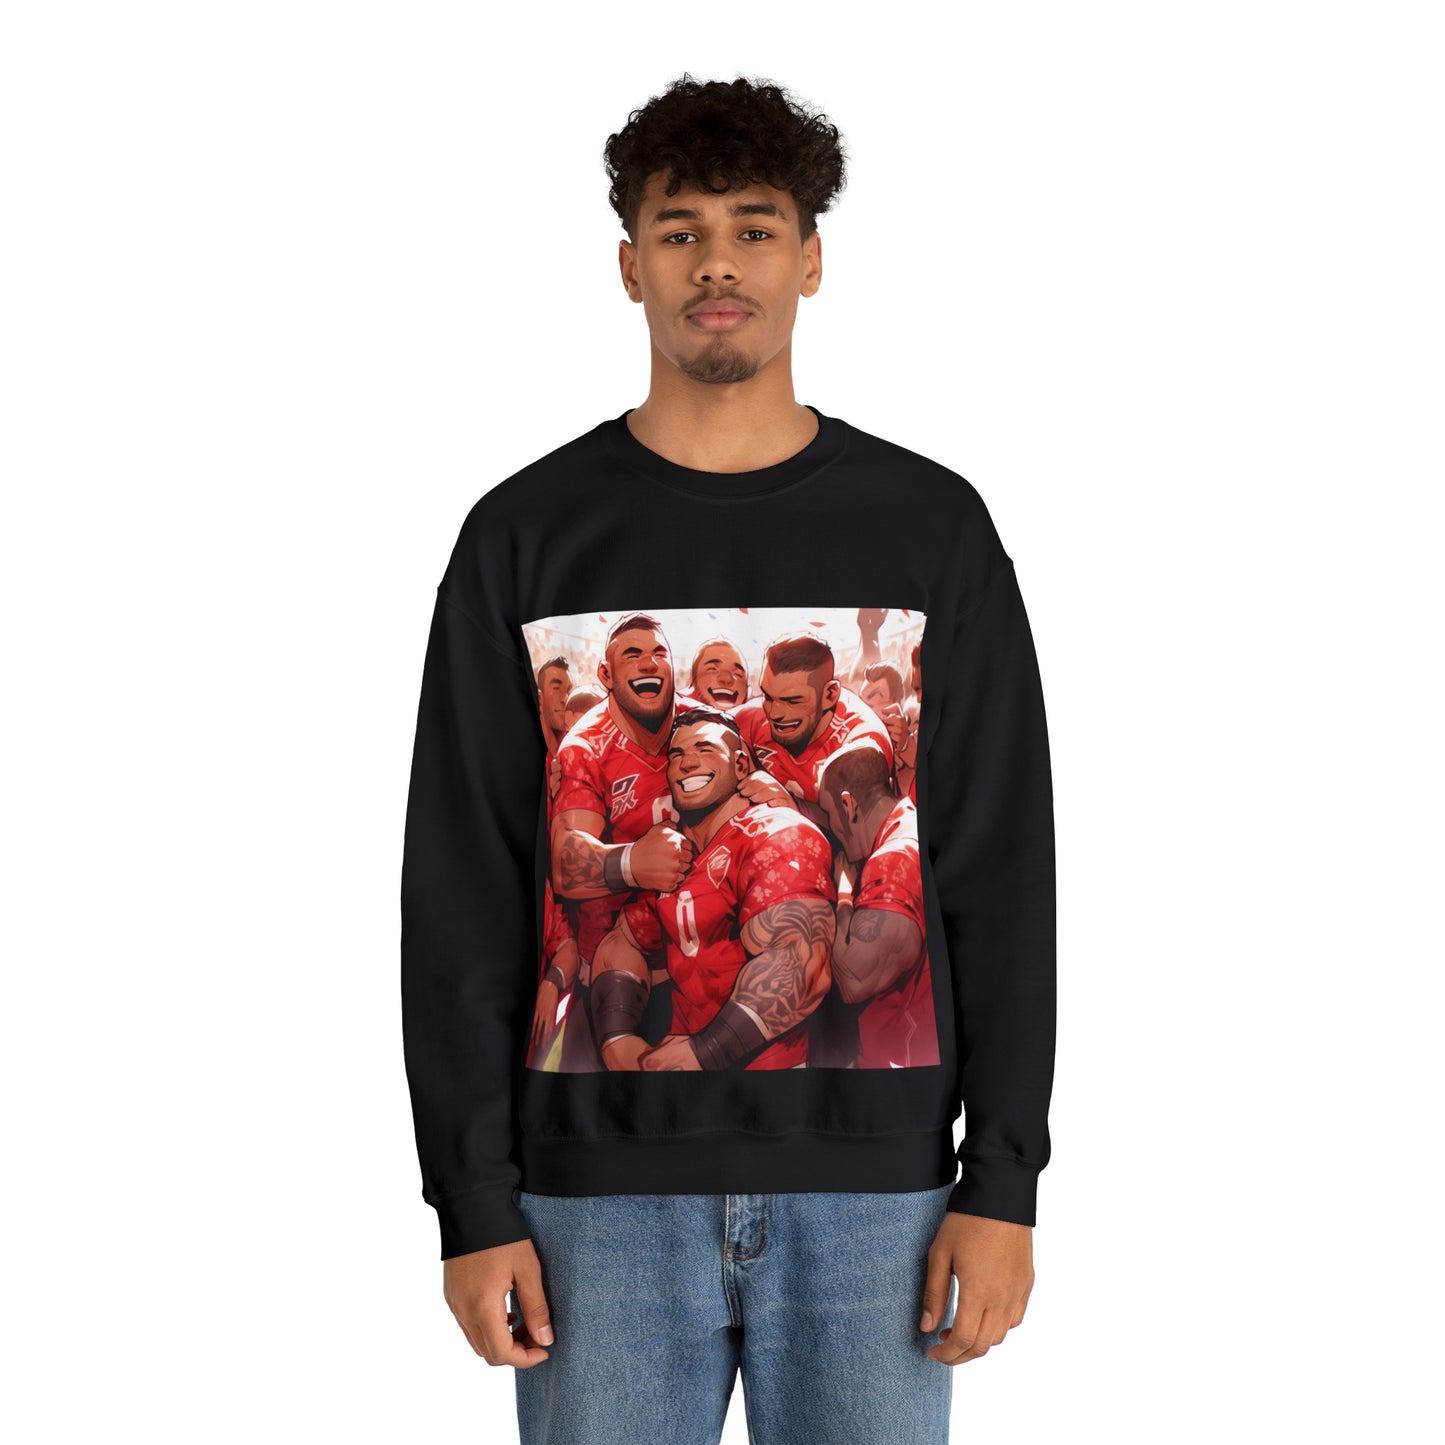 Happy Tonga - black sweatshirt